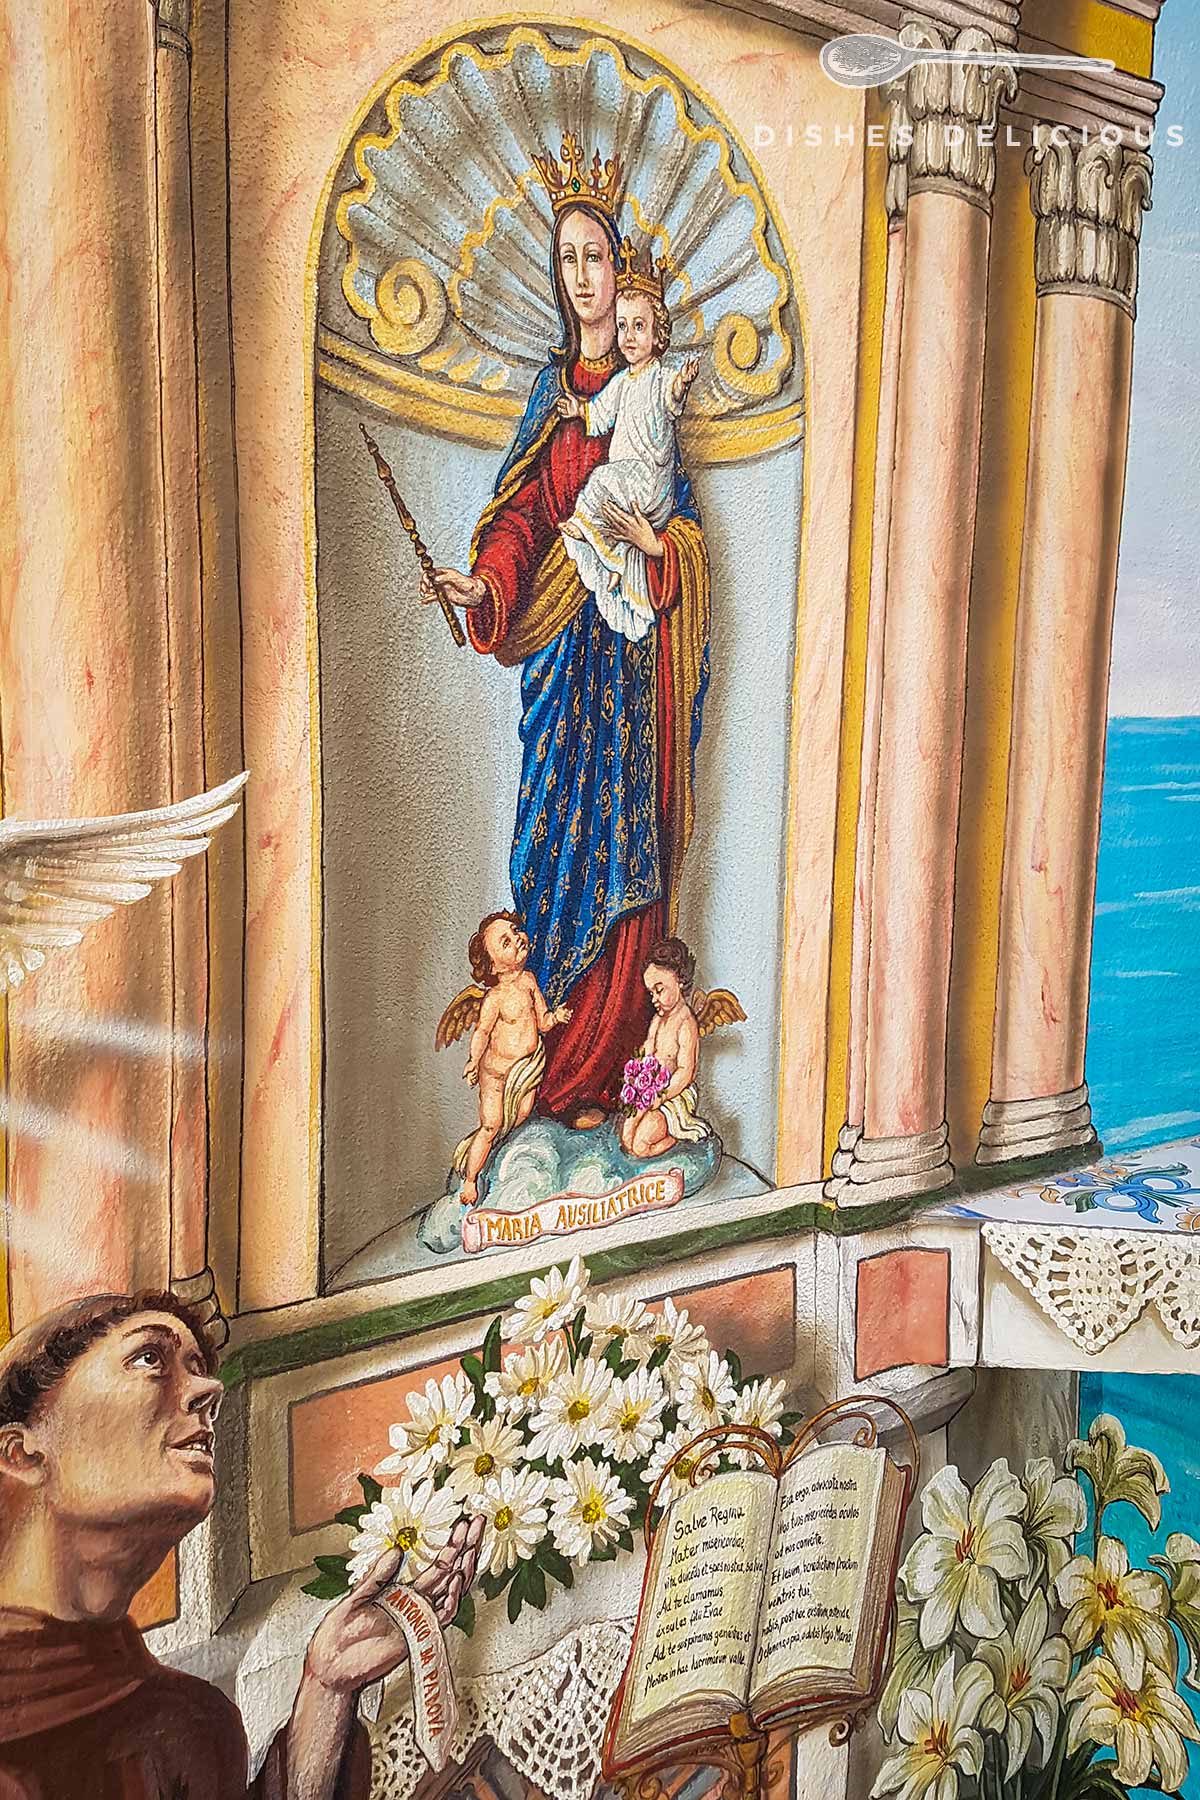 Religiöse Wandmalerei in Peschici mit einem Mönch, der zur Maria aufblickt.